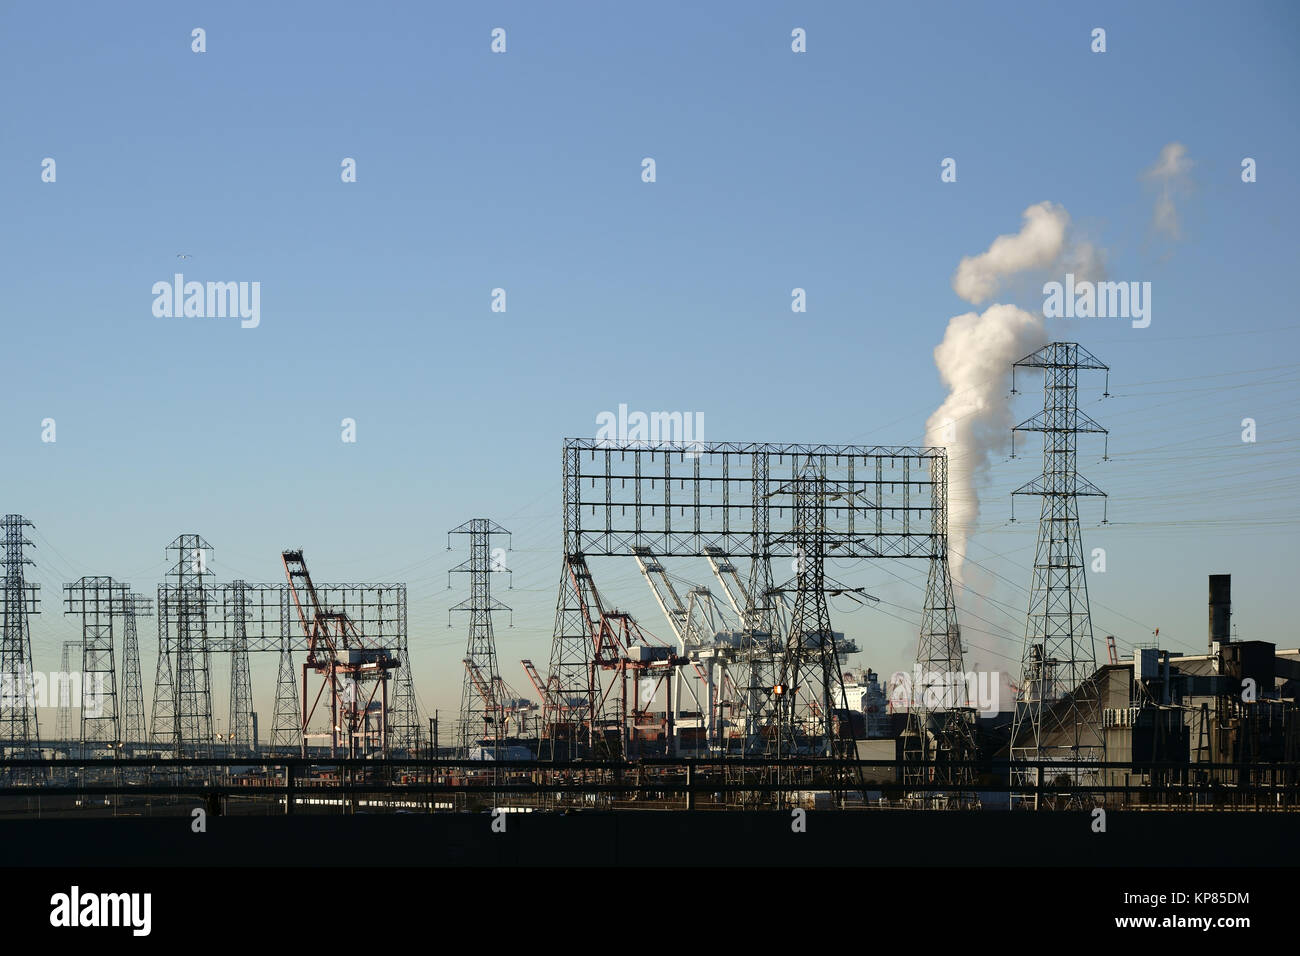 Der Industriehafen von Los Angeles mit Kränen, Strommasten und Industriegebäuden. Stock Photo